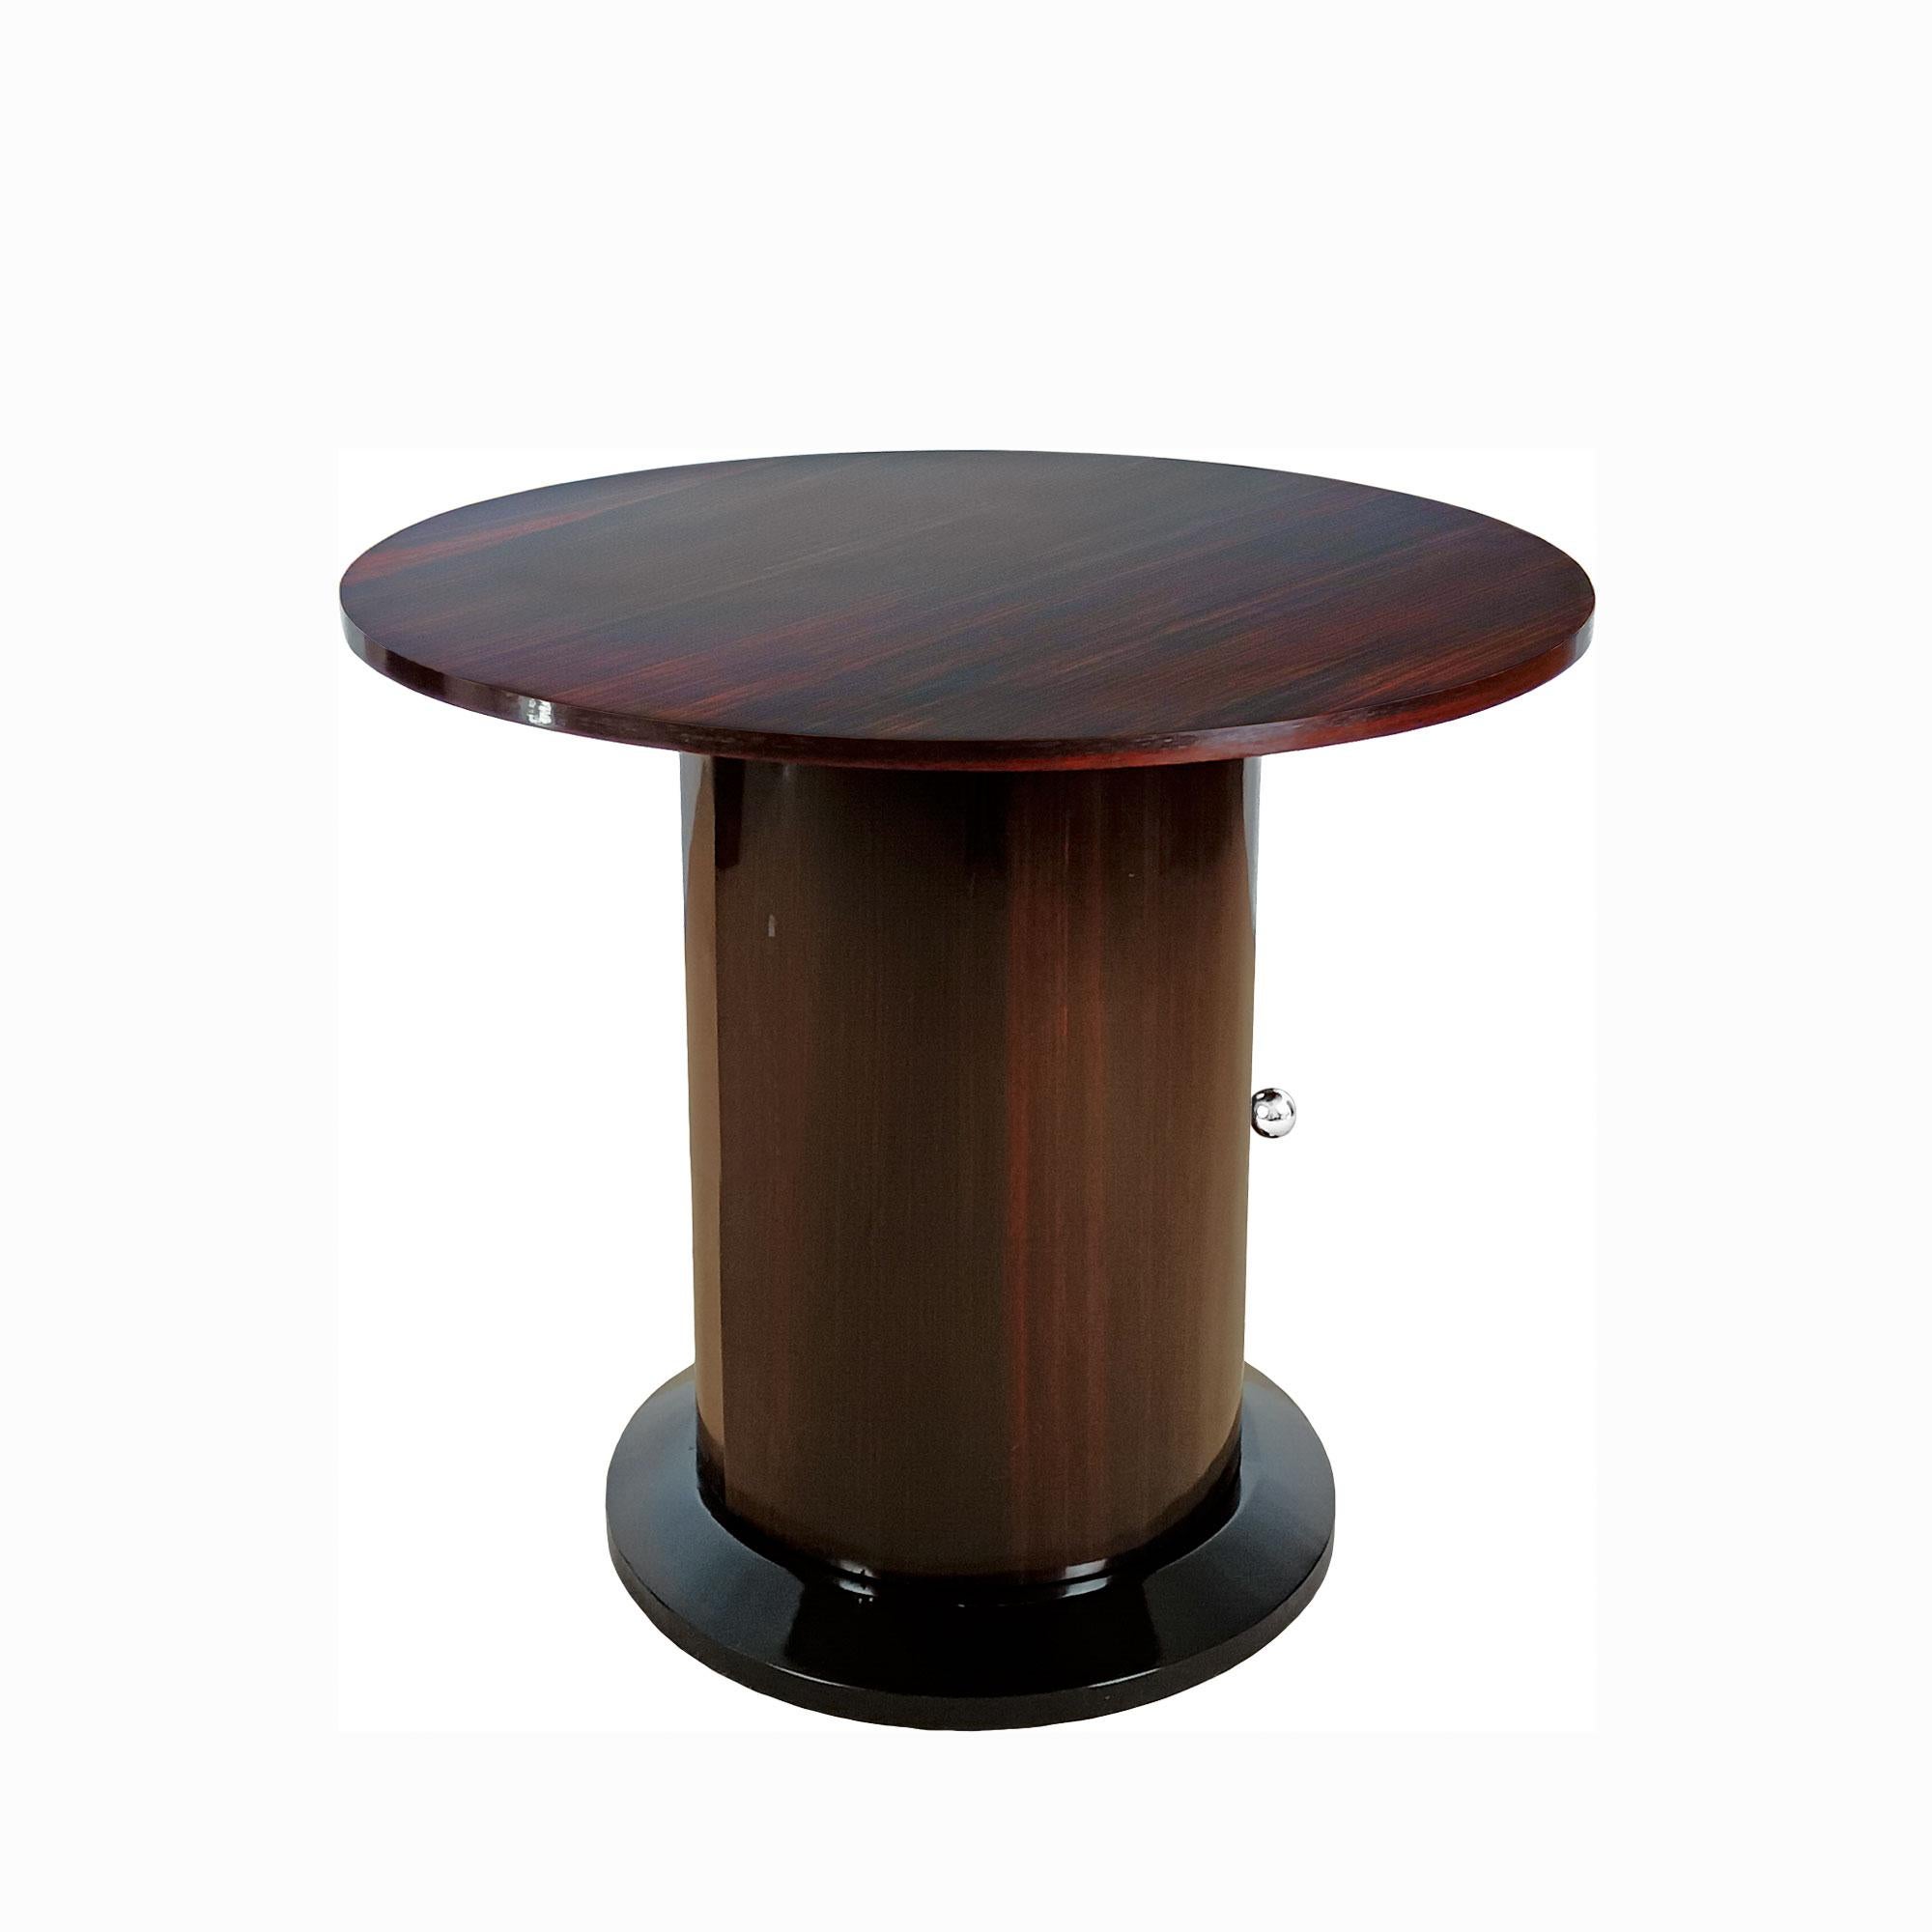 Table d'appoint circulaire - mini bar en bois plaqué palissandre, base en hêtre laqué noir, bouton en laiton nickelé. Cirage français.

France 1940